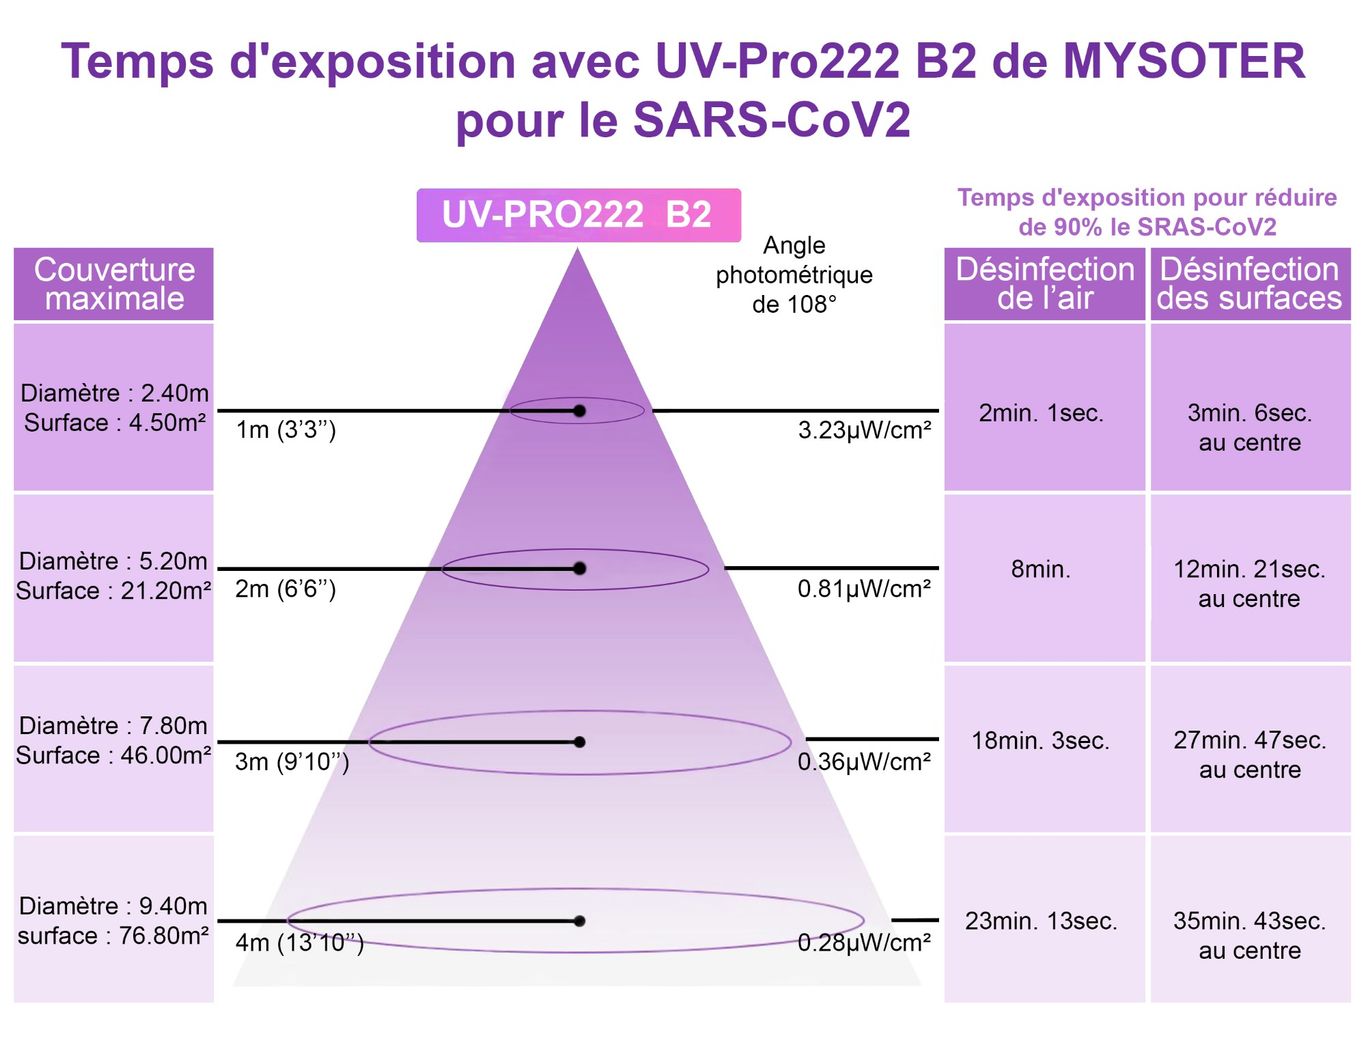 Temps d'exposition pour réduire le SARS-CoV2 avec UV-Pro222 B2 de Mysoter